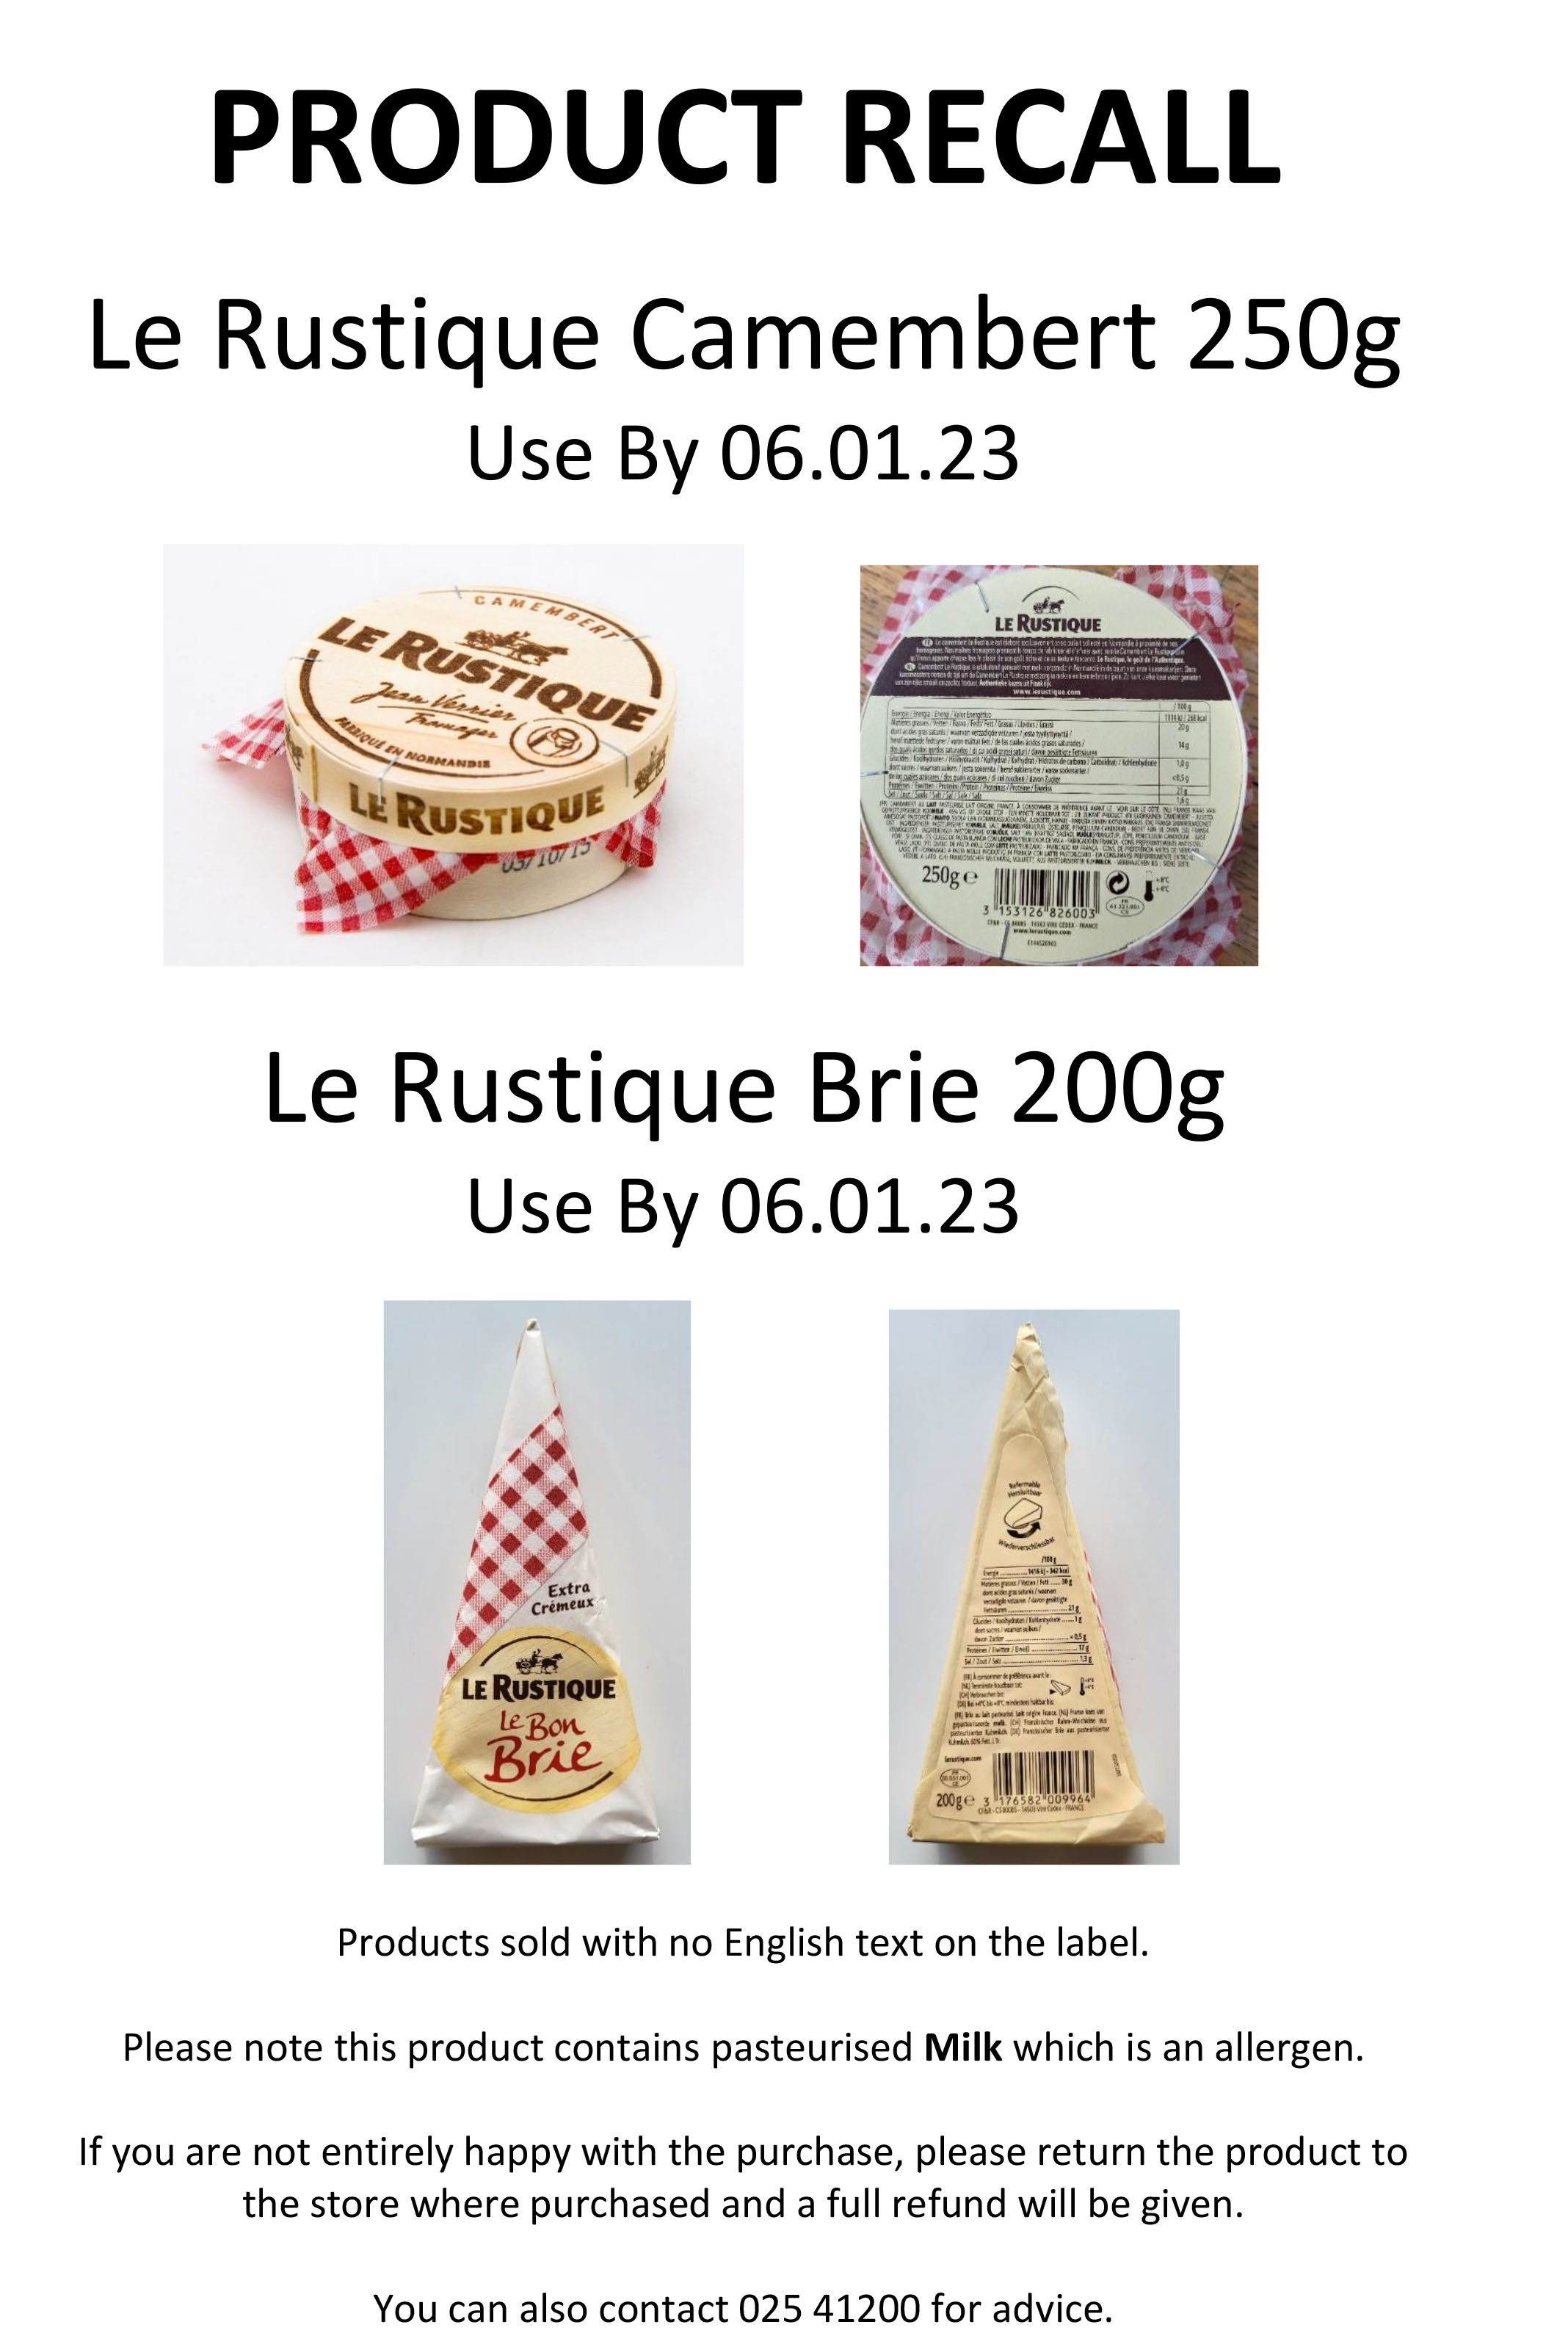 Le Camembert - Le Rustique : Le Rustique